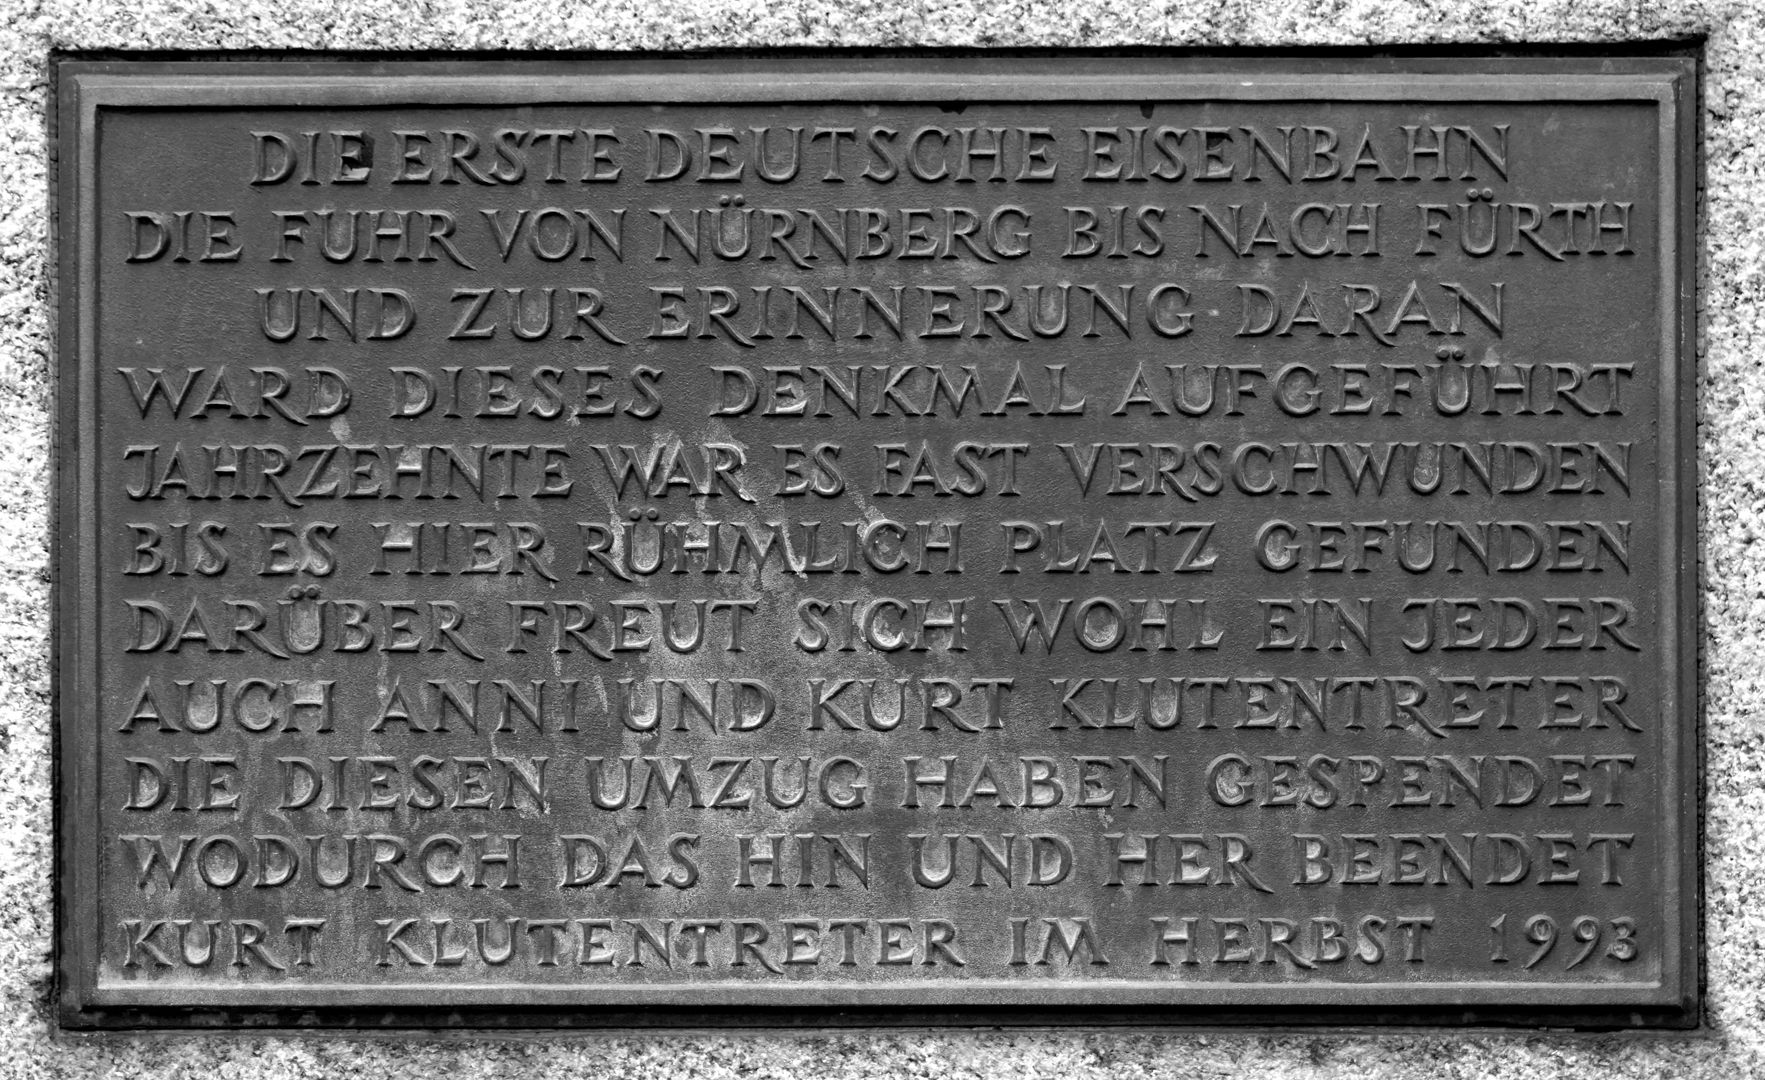 Ludwigseisenbahn-Denkmal Auf der Denkmalseite des Pultsteines, Inschrift von Anni und Kurt Klutentreter